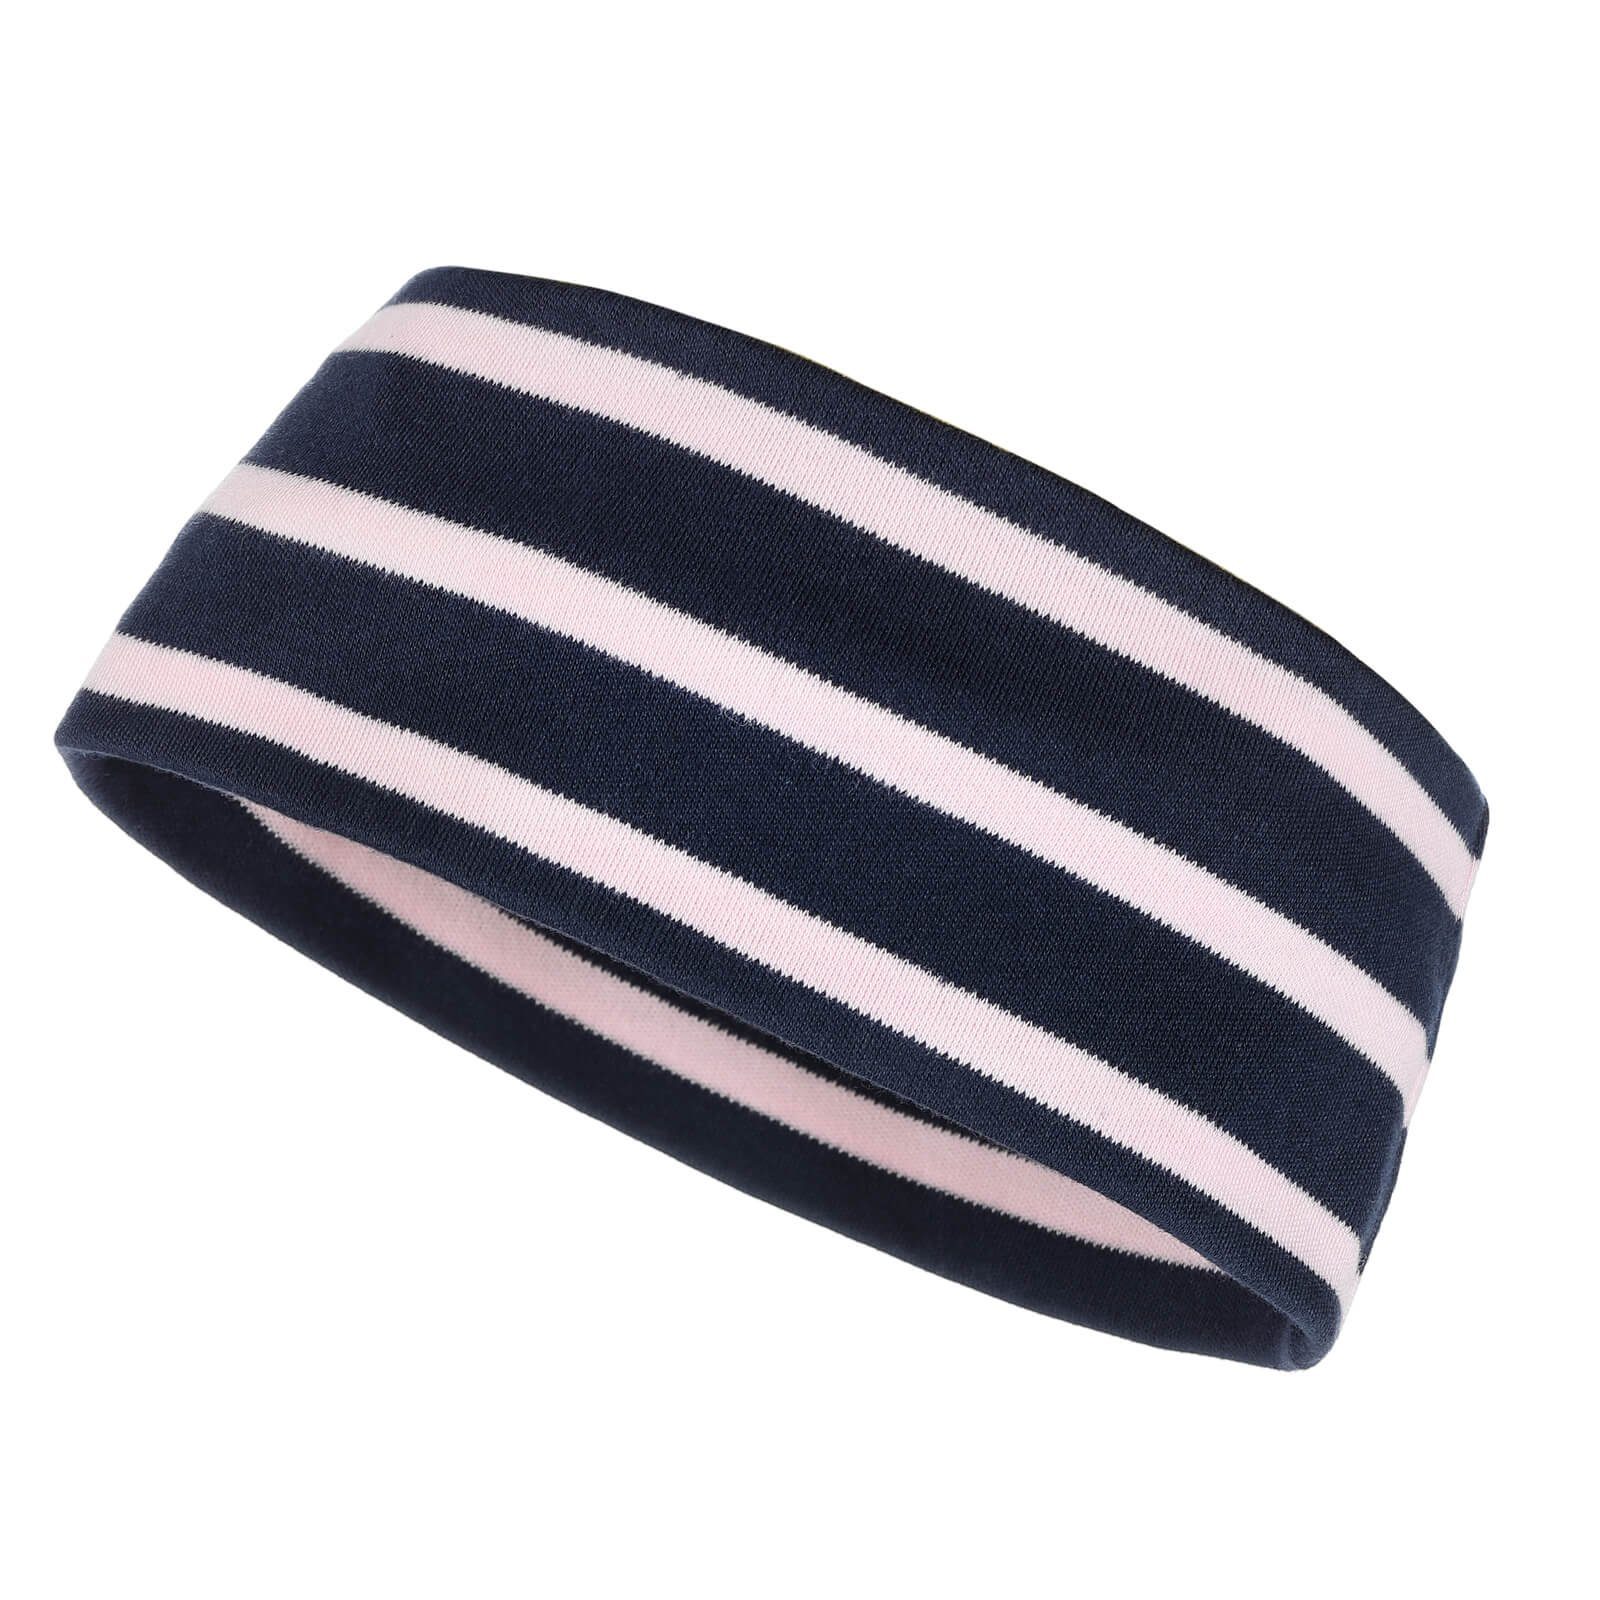 modAS Stirnband Unisex Kopfband Maritim für Kinder und Erwachsene zweilagig Baumwolle (43) blau / rosa | Stirnbänder